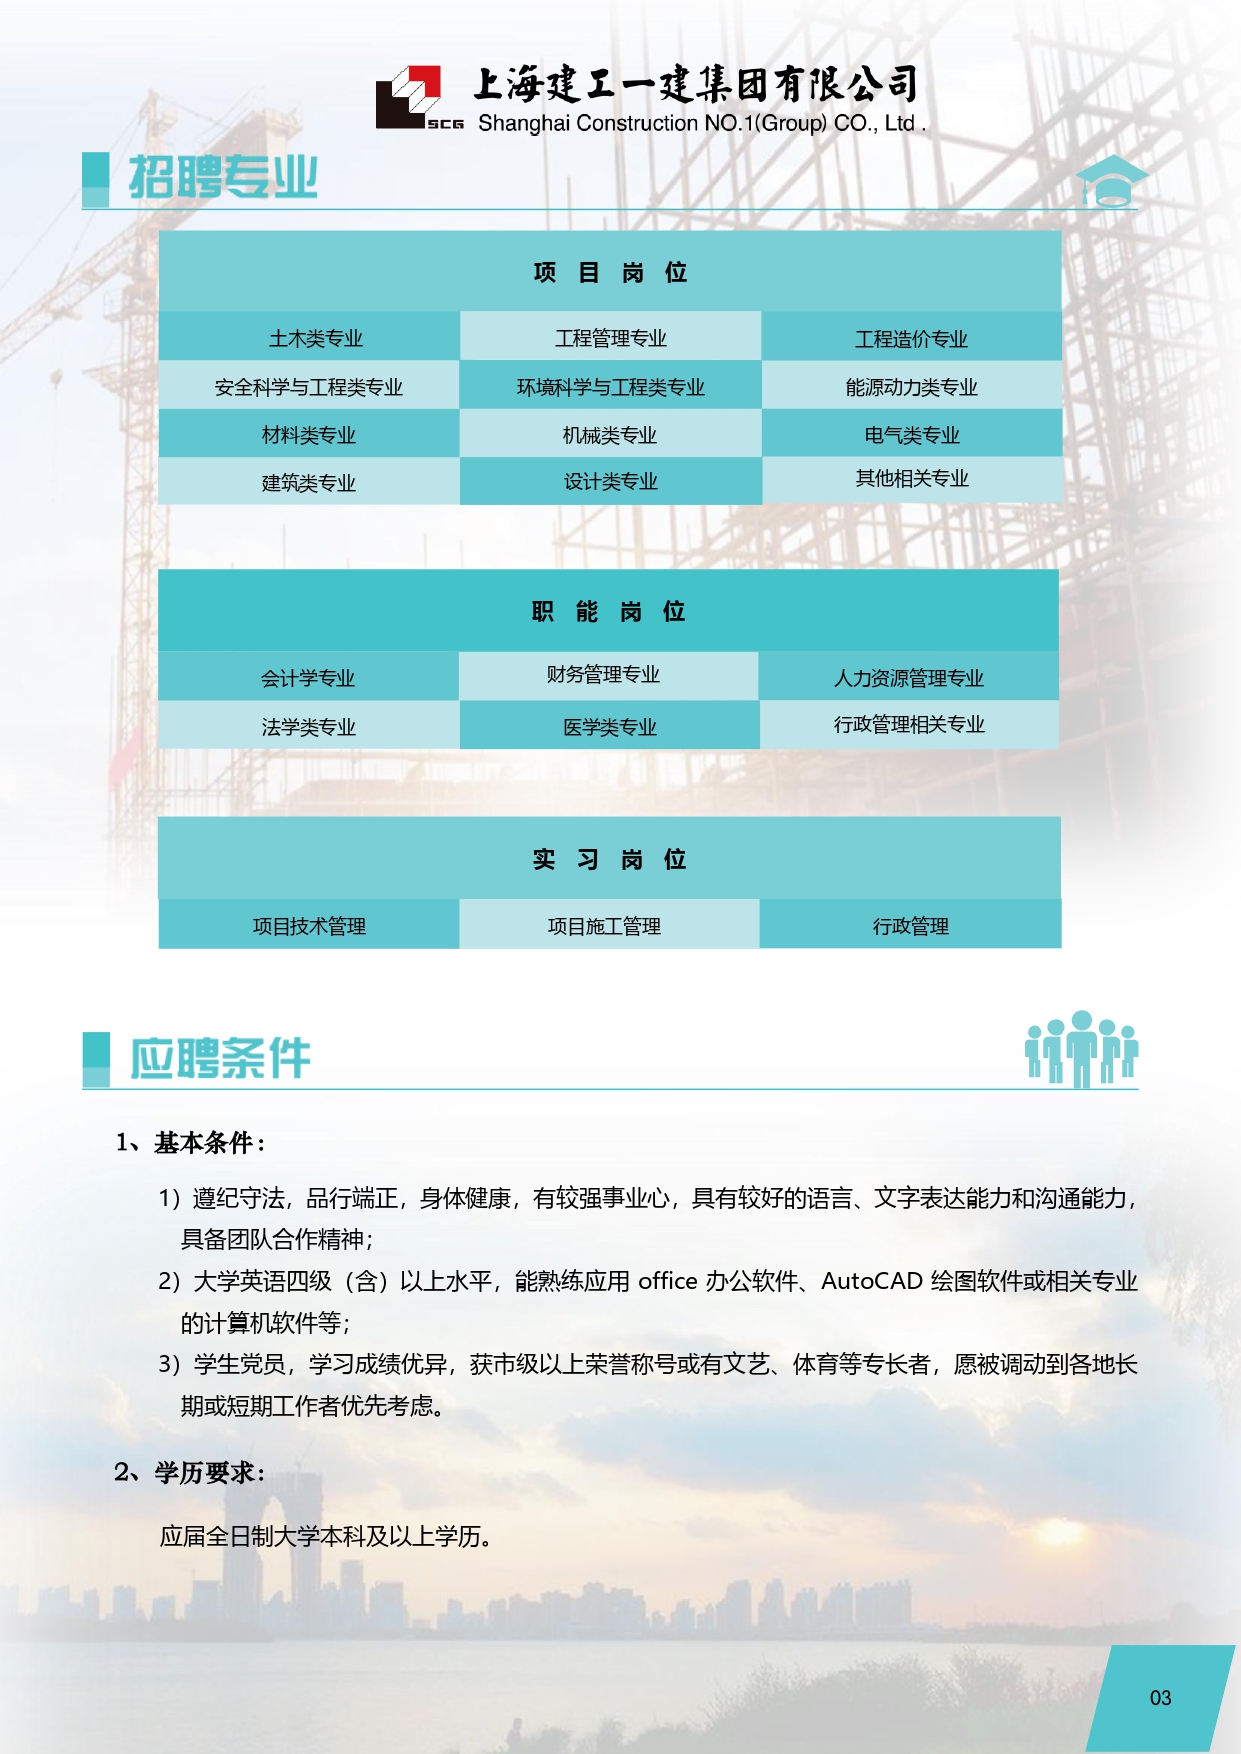 【招聘】上海建工一建集团有限公司 2020